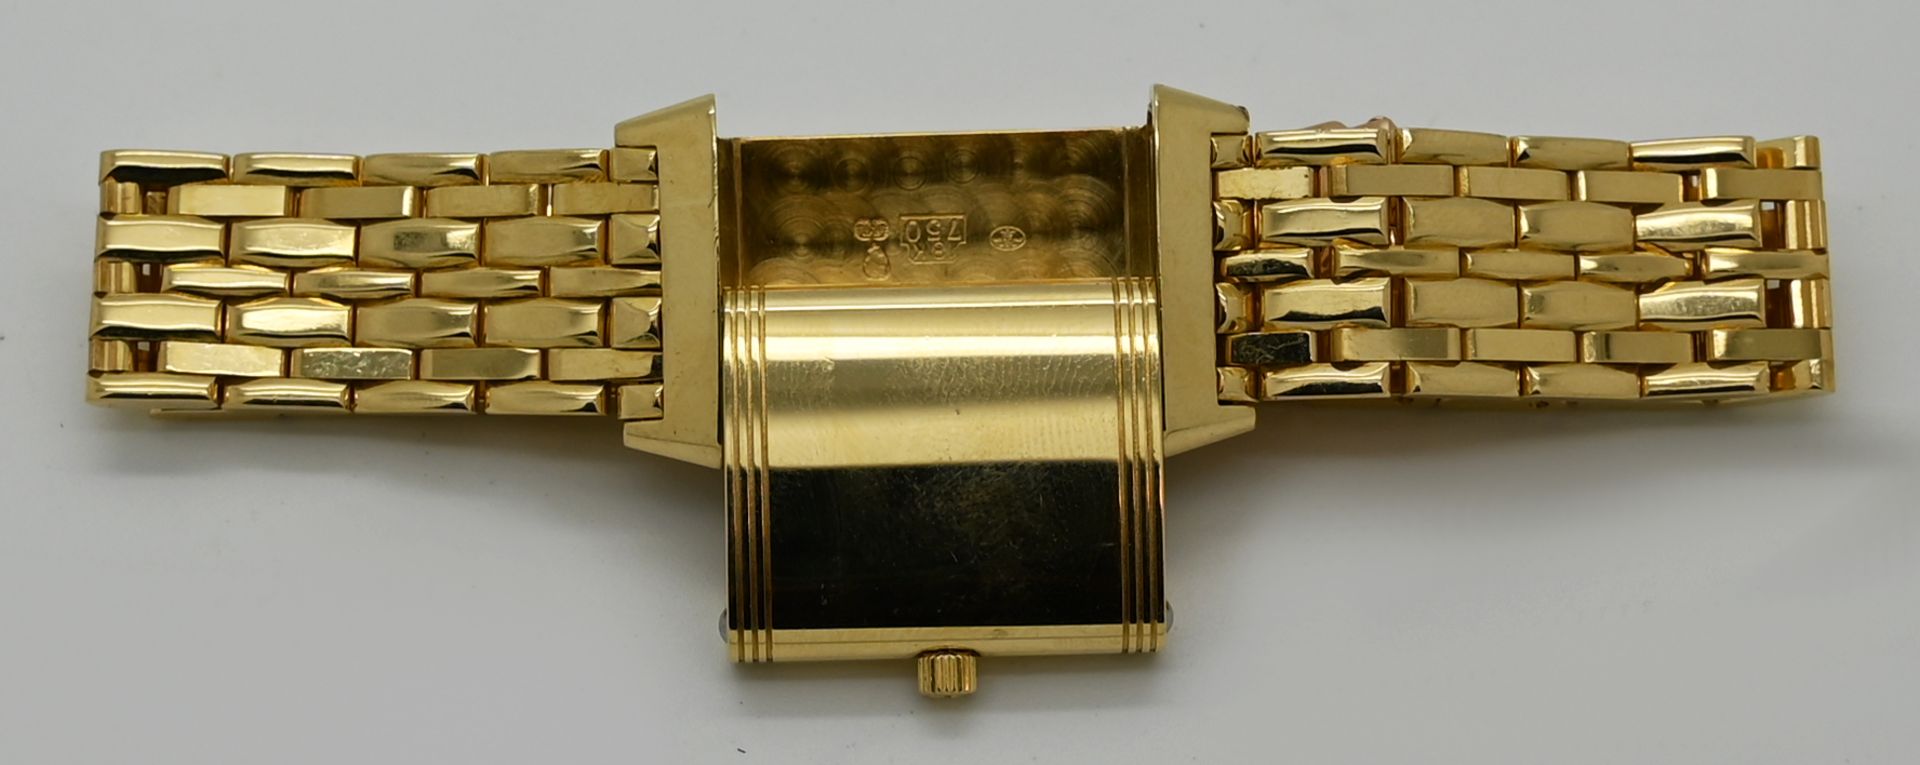 1 Damenarmbanduhr JAEGER LECOULTRE Reverso GG 18ct., mit Faltschließe, Handaufzug (Uhr läuft an), - Bild 3 aus 3